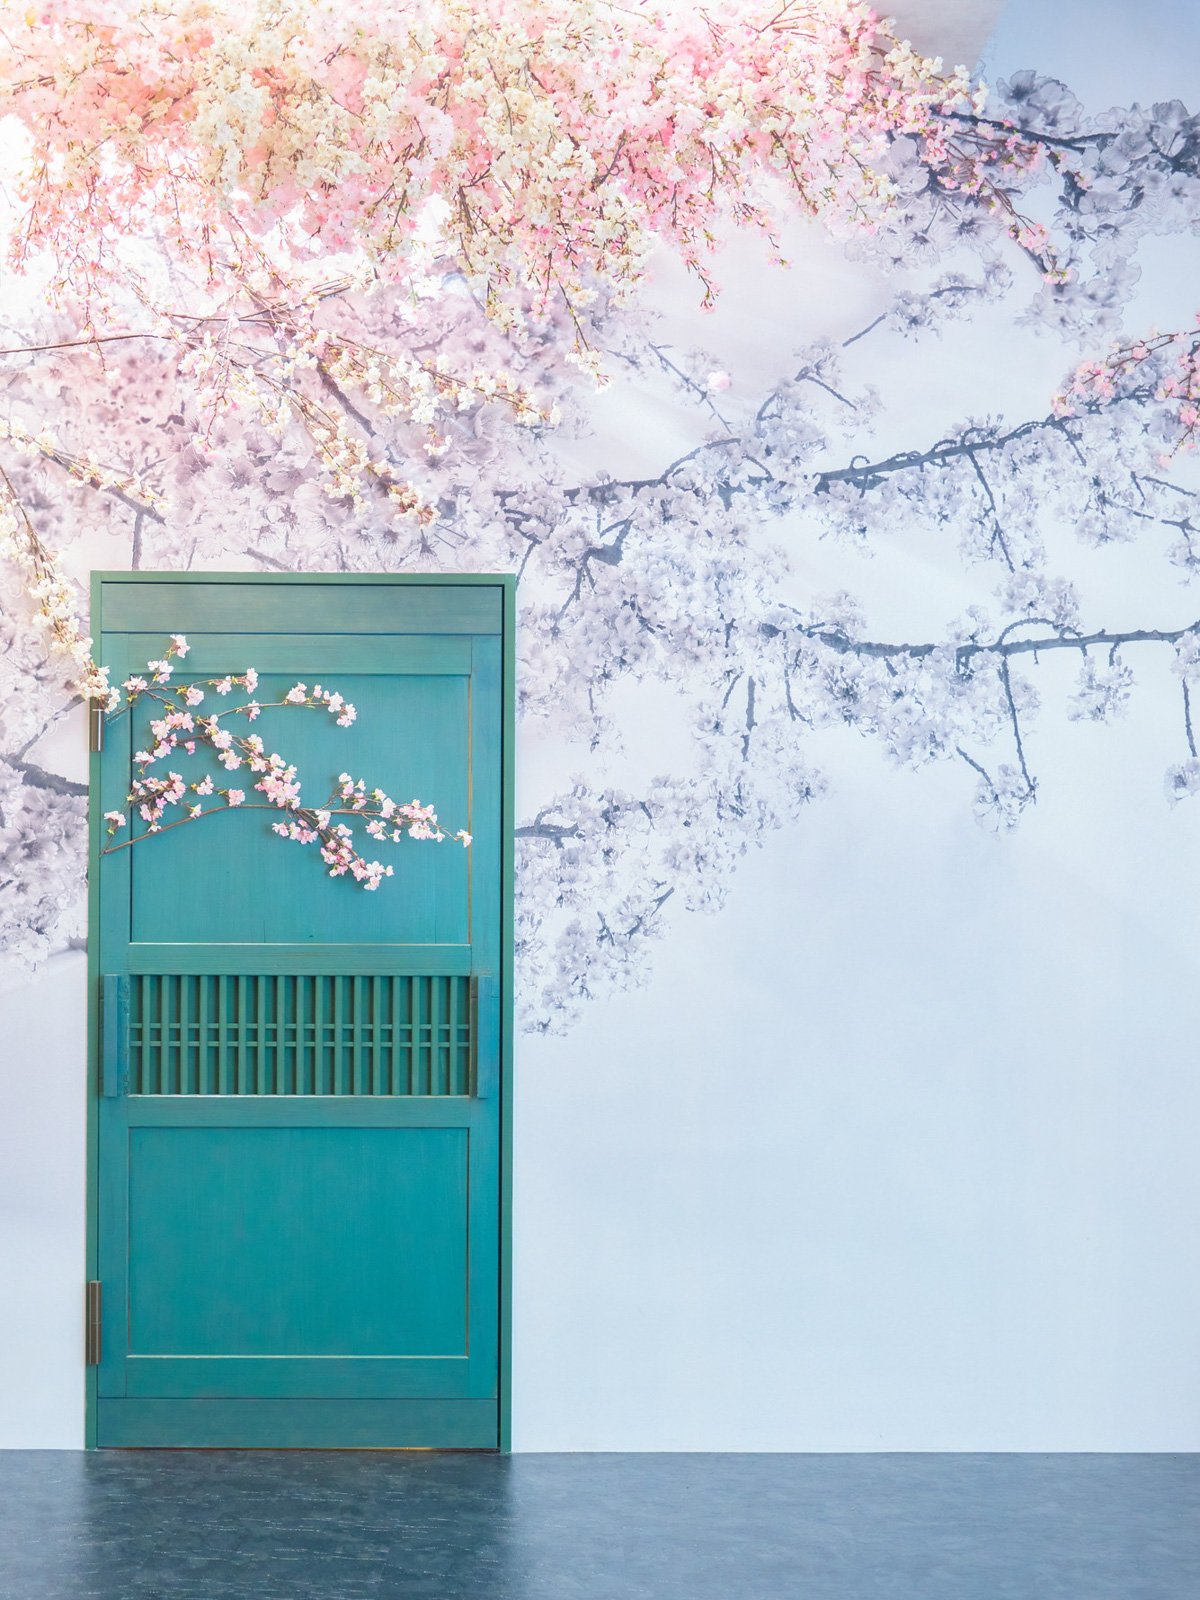 壁面に描かれた桜に立体の造形美が織りなすセンチメンタルなスタジオ